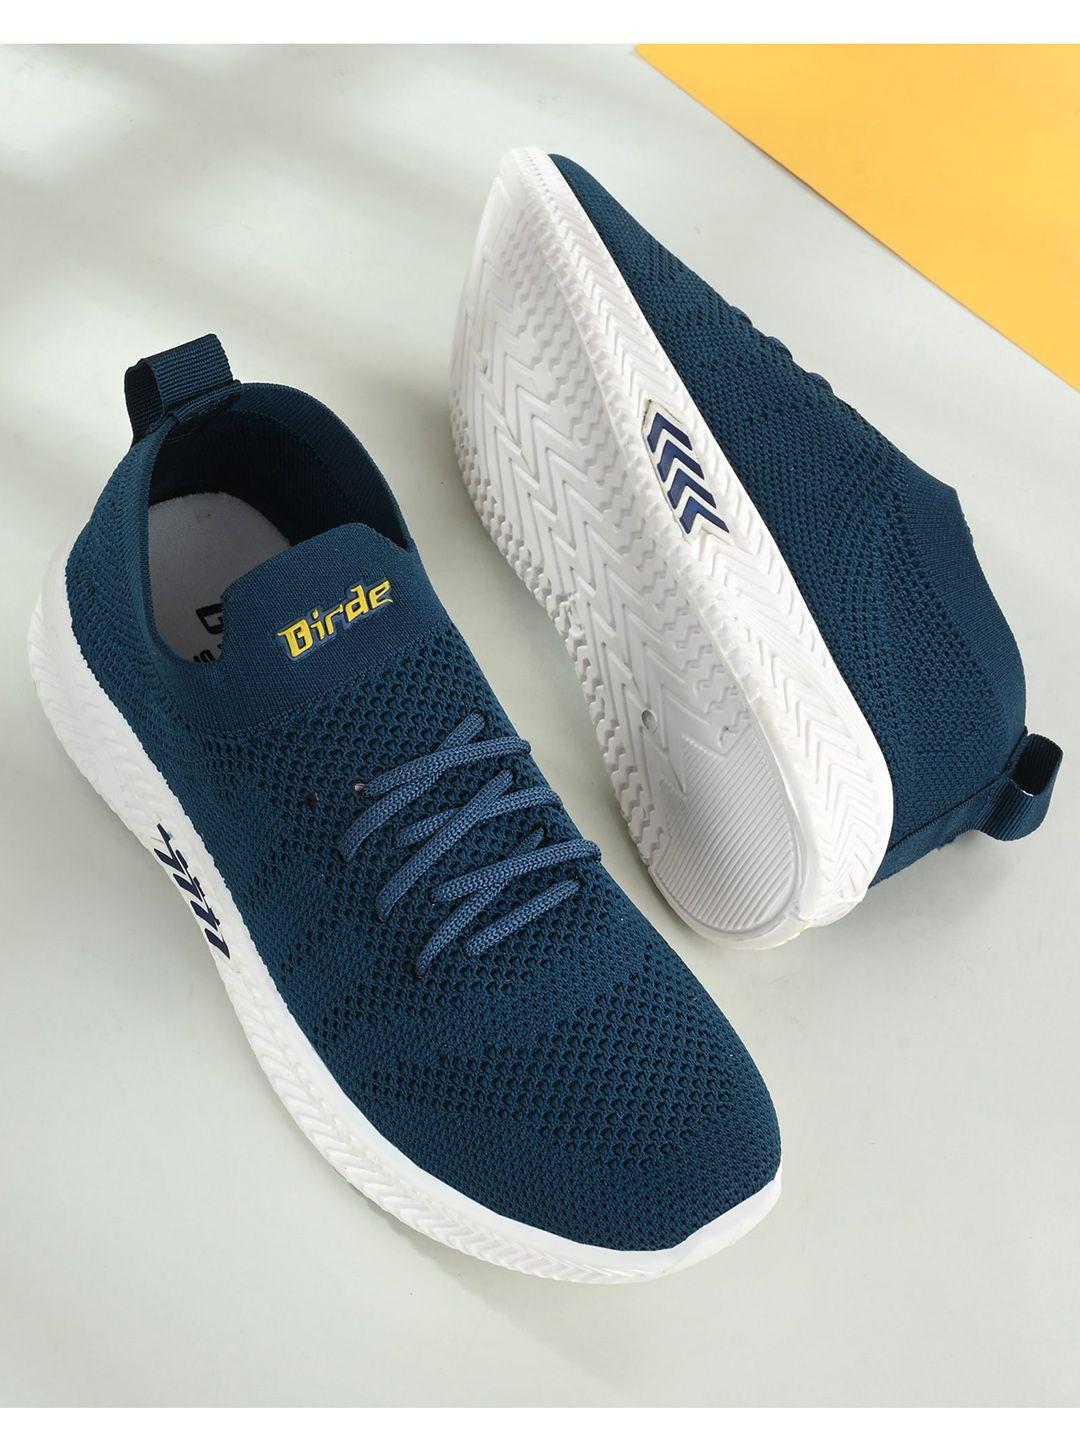 birde-men-navy-blue-textured-sneakers